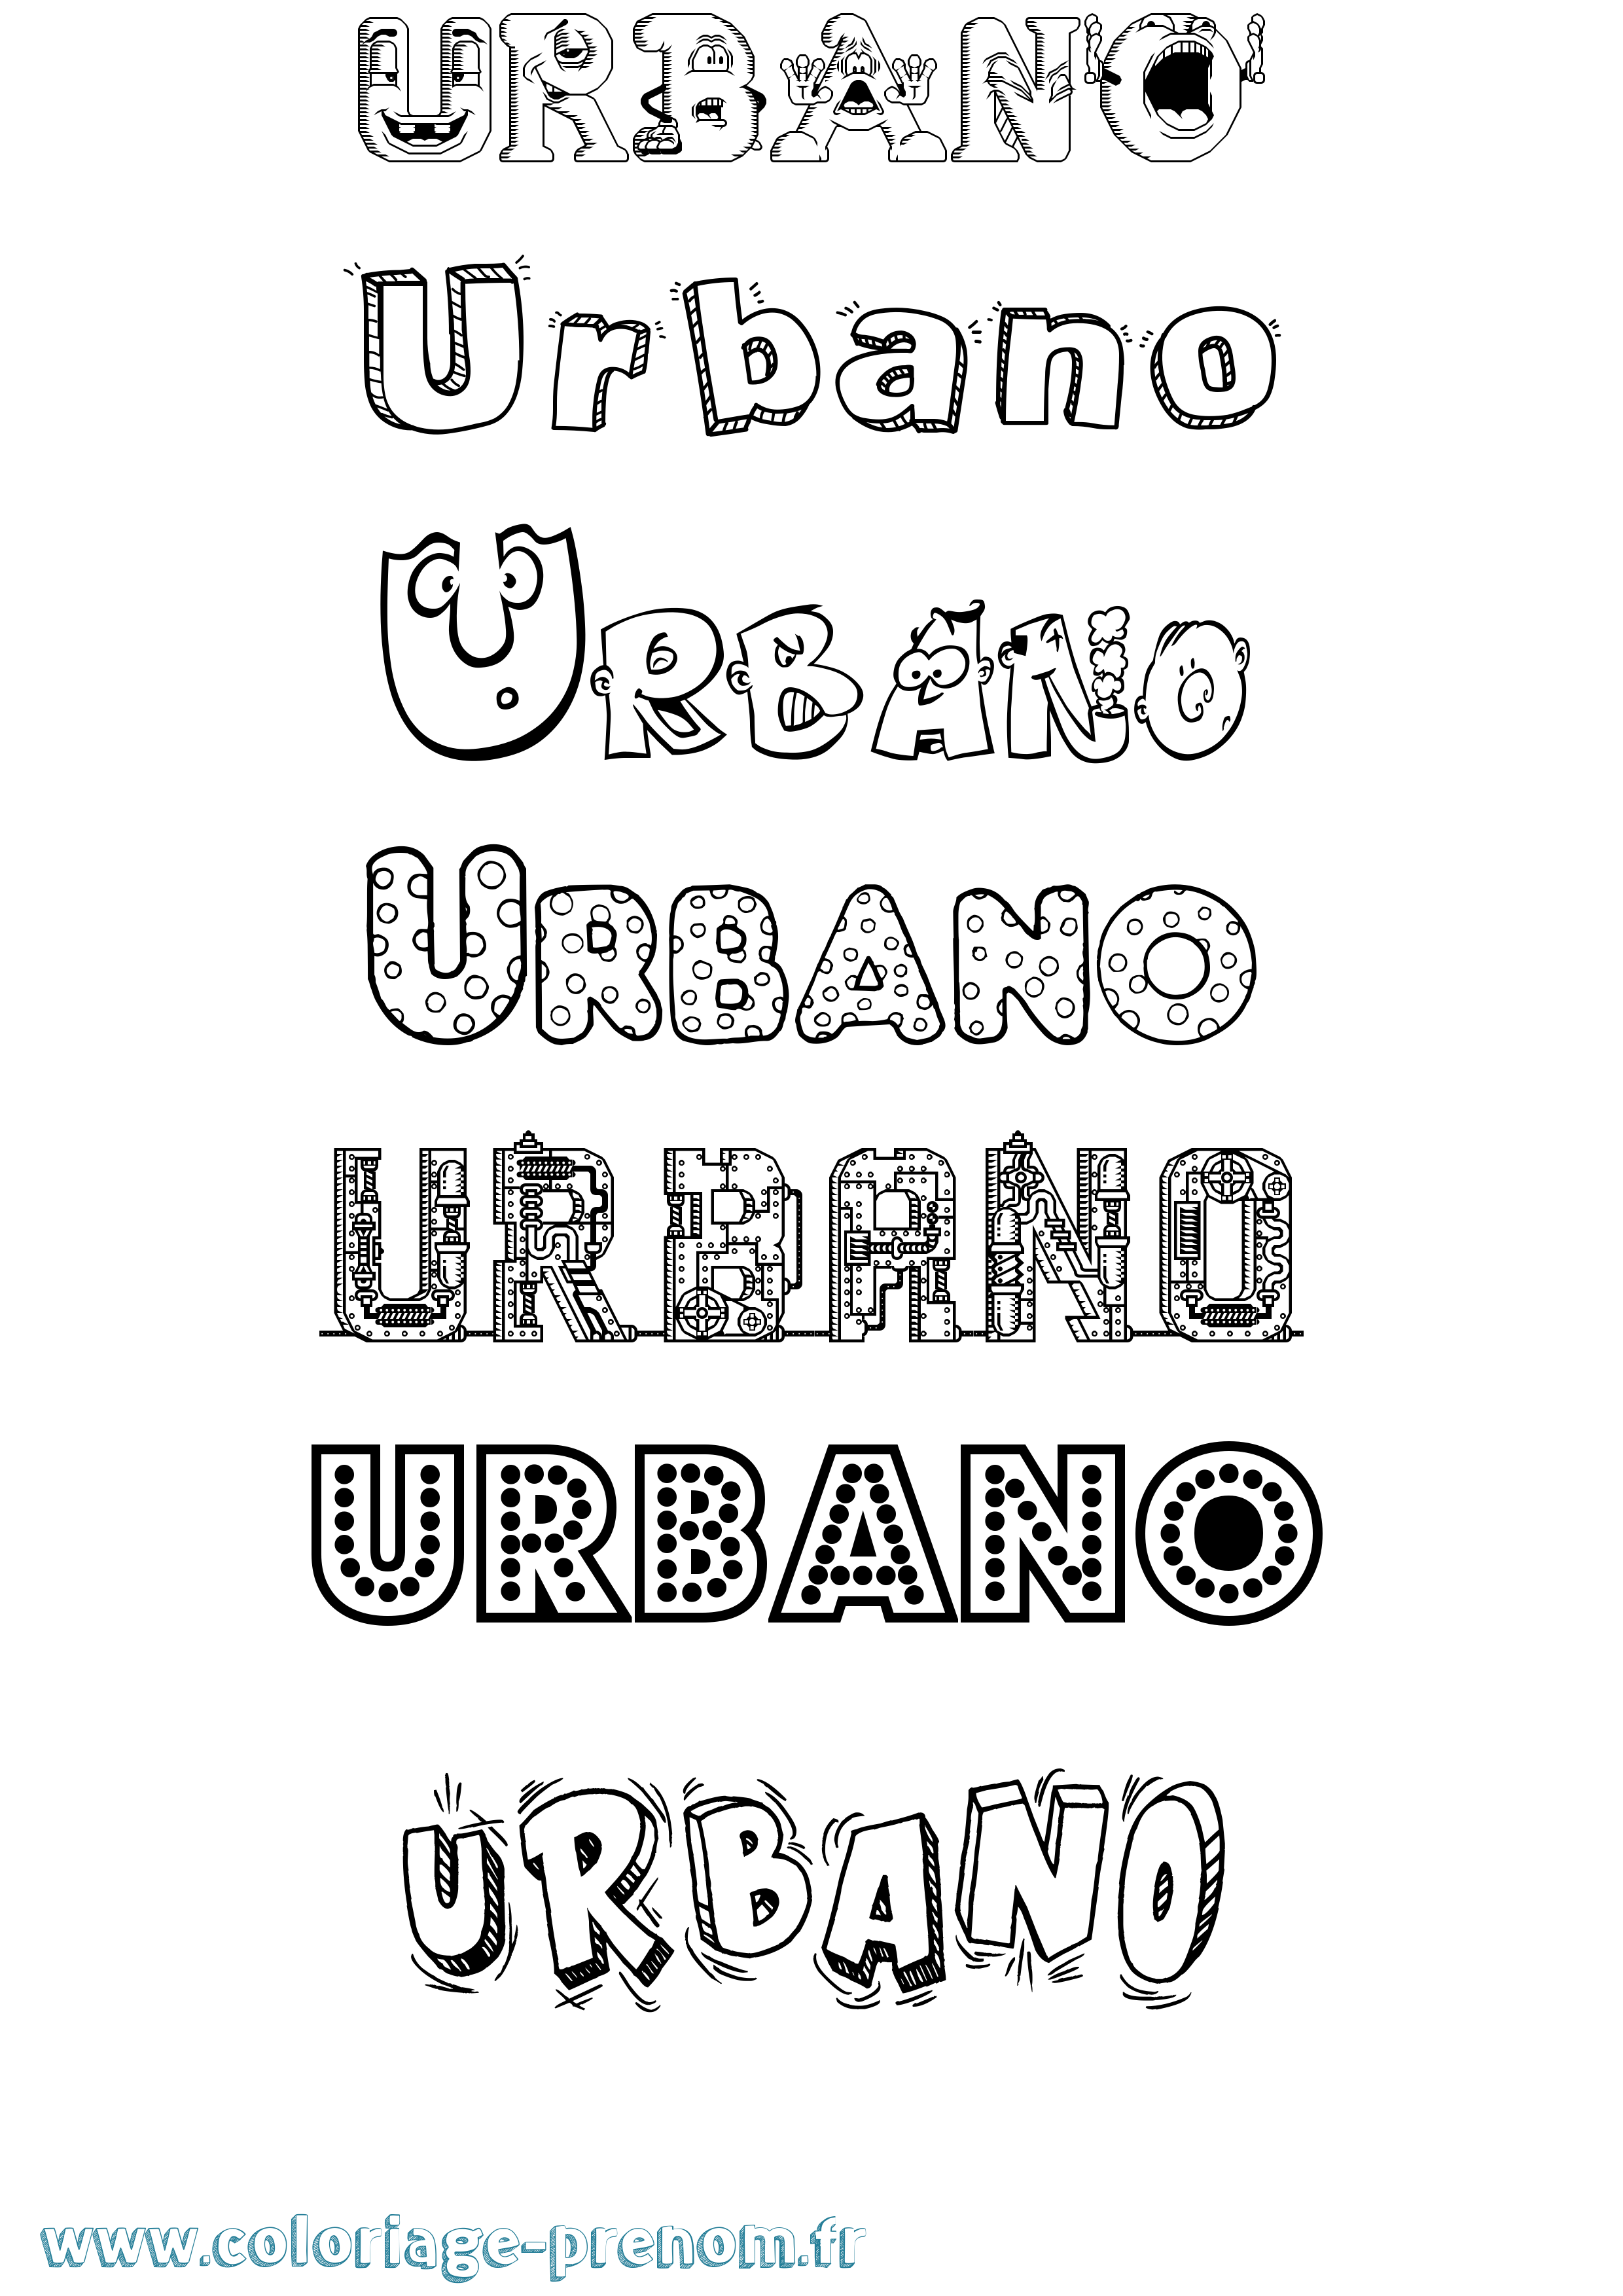 Coloriage prénom Urbano Fun